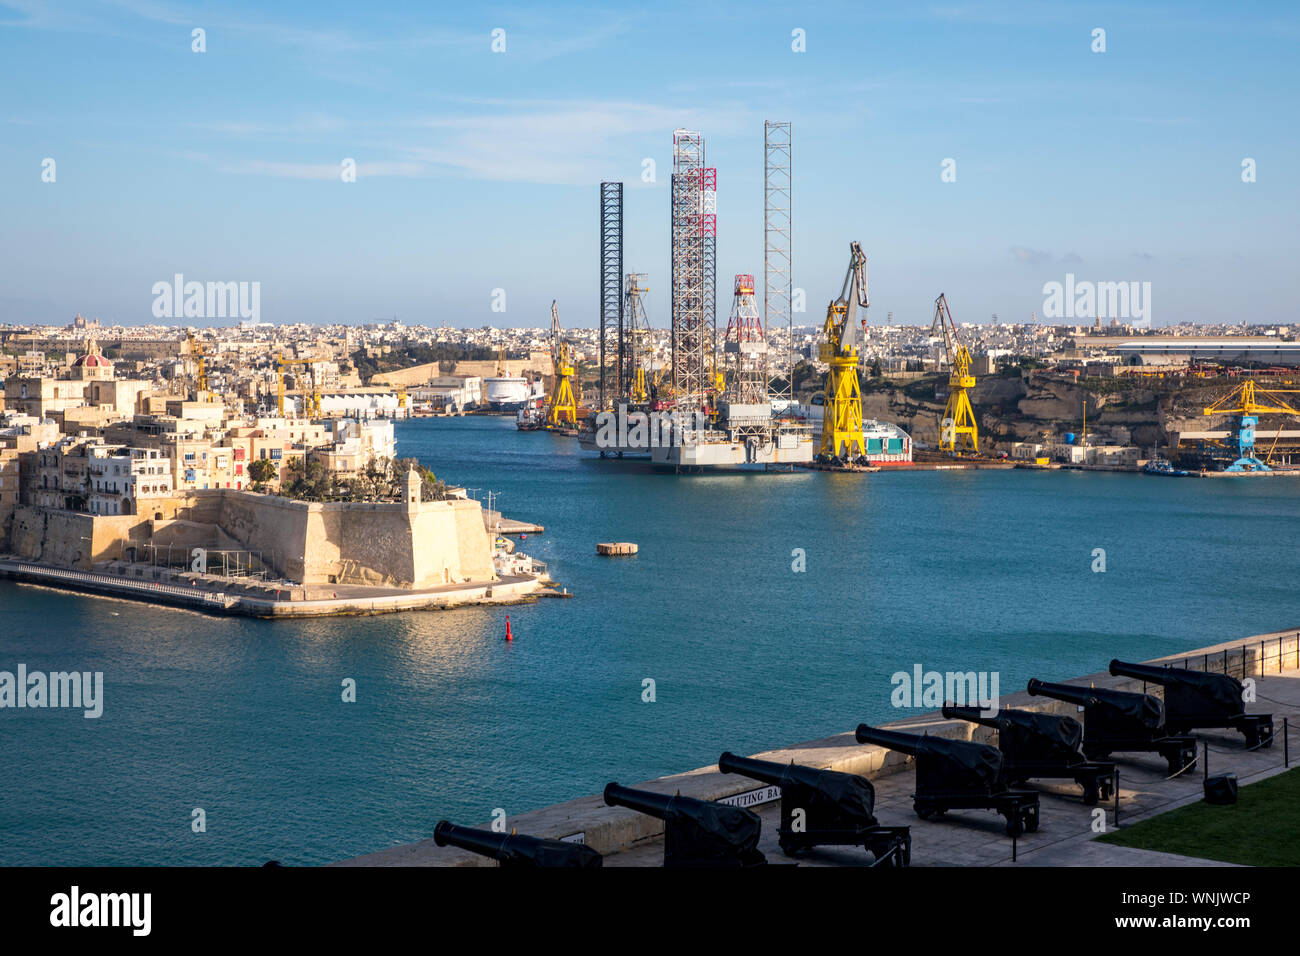 Malta, Grand Harbour, Hafen mit Werften, Docks, Workshops für Schiffe, Stockfoto